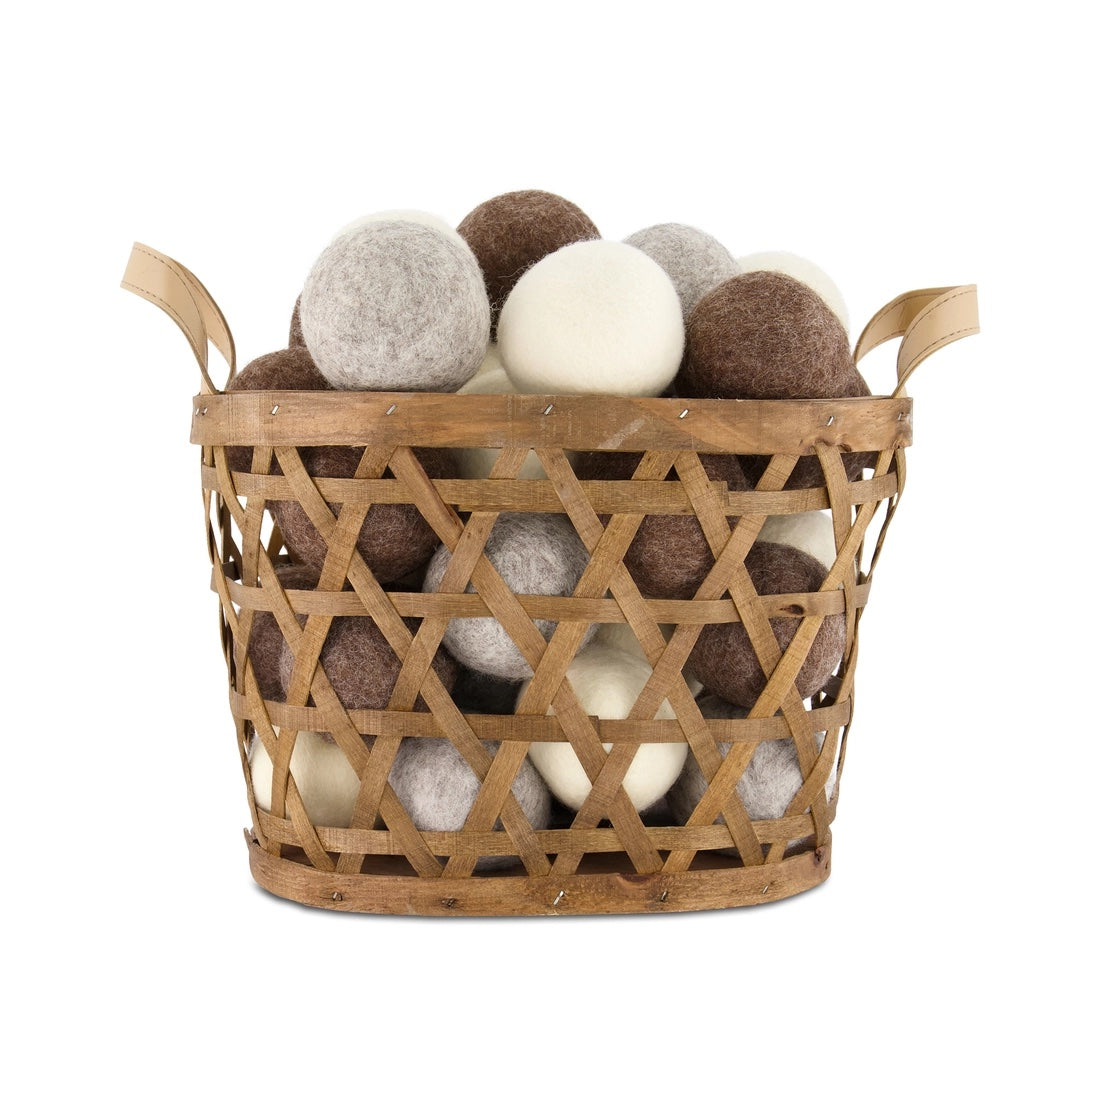 Individual Wool Dryer Balls